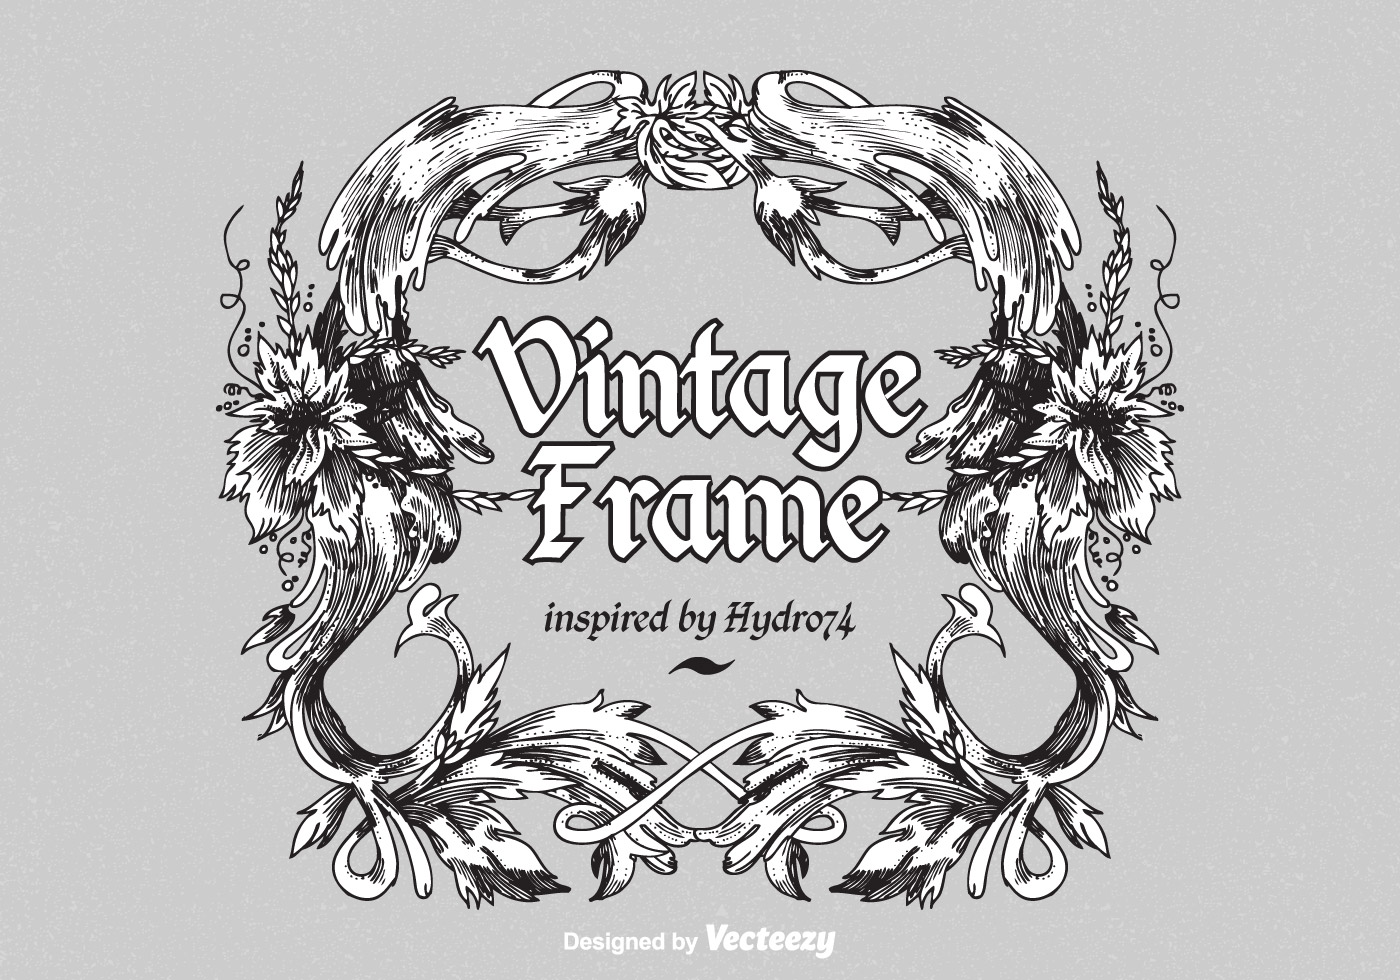 Download Vintage Ornate Vector Frame - Download Free Vector Art ...